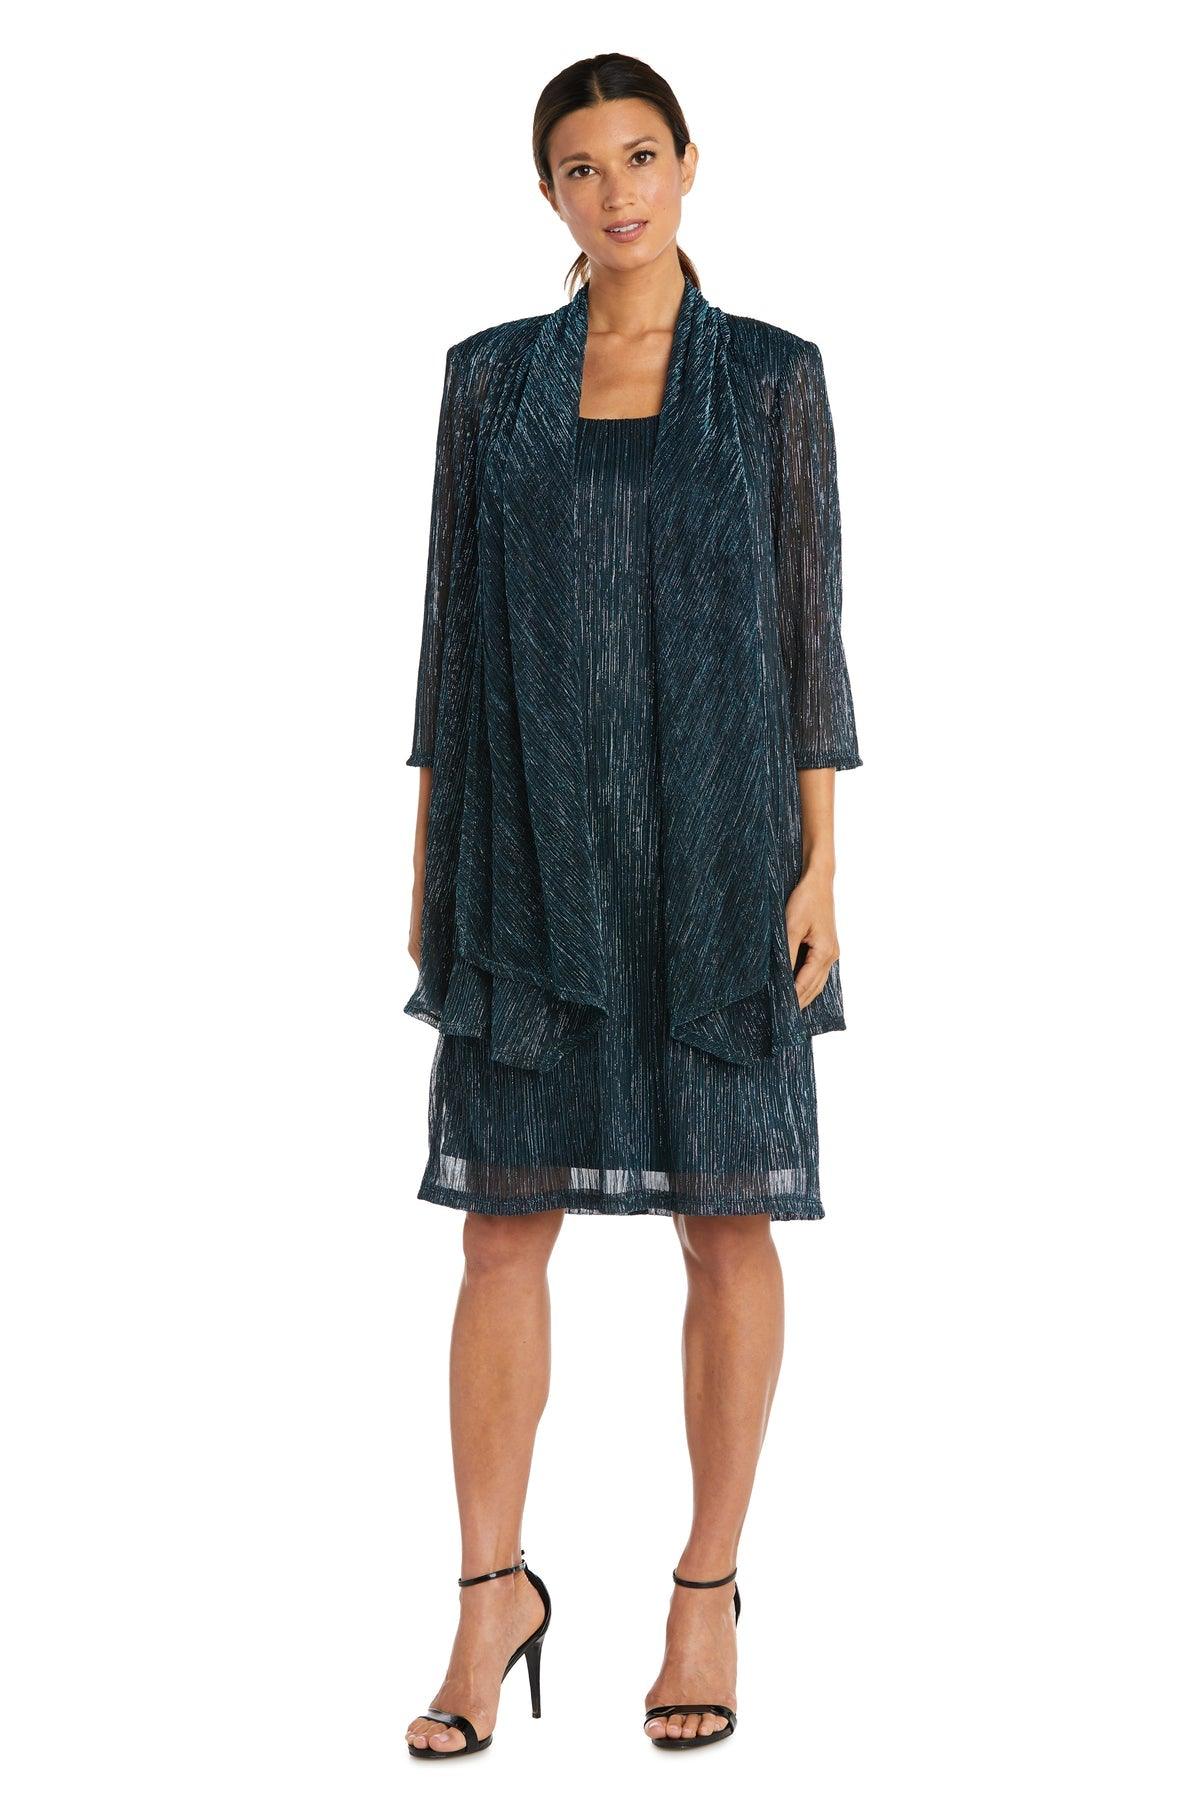 R&M Richards Short Plus Size Jacket Dress 5191W - The Dress Outlet